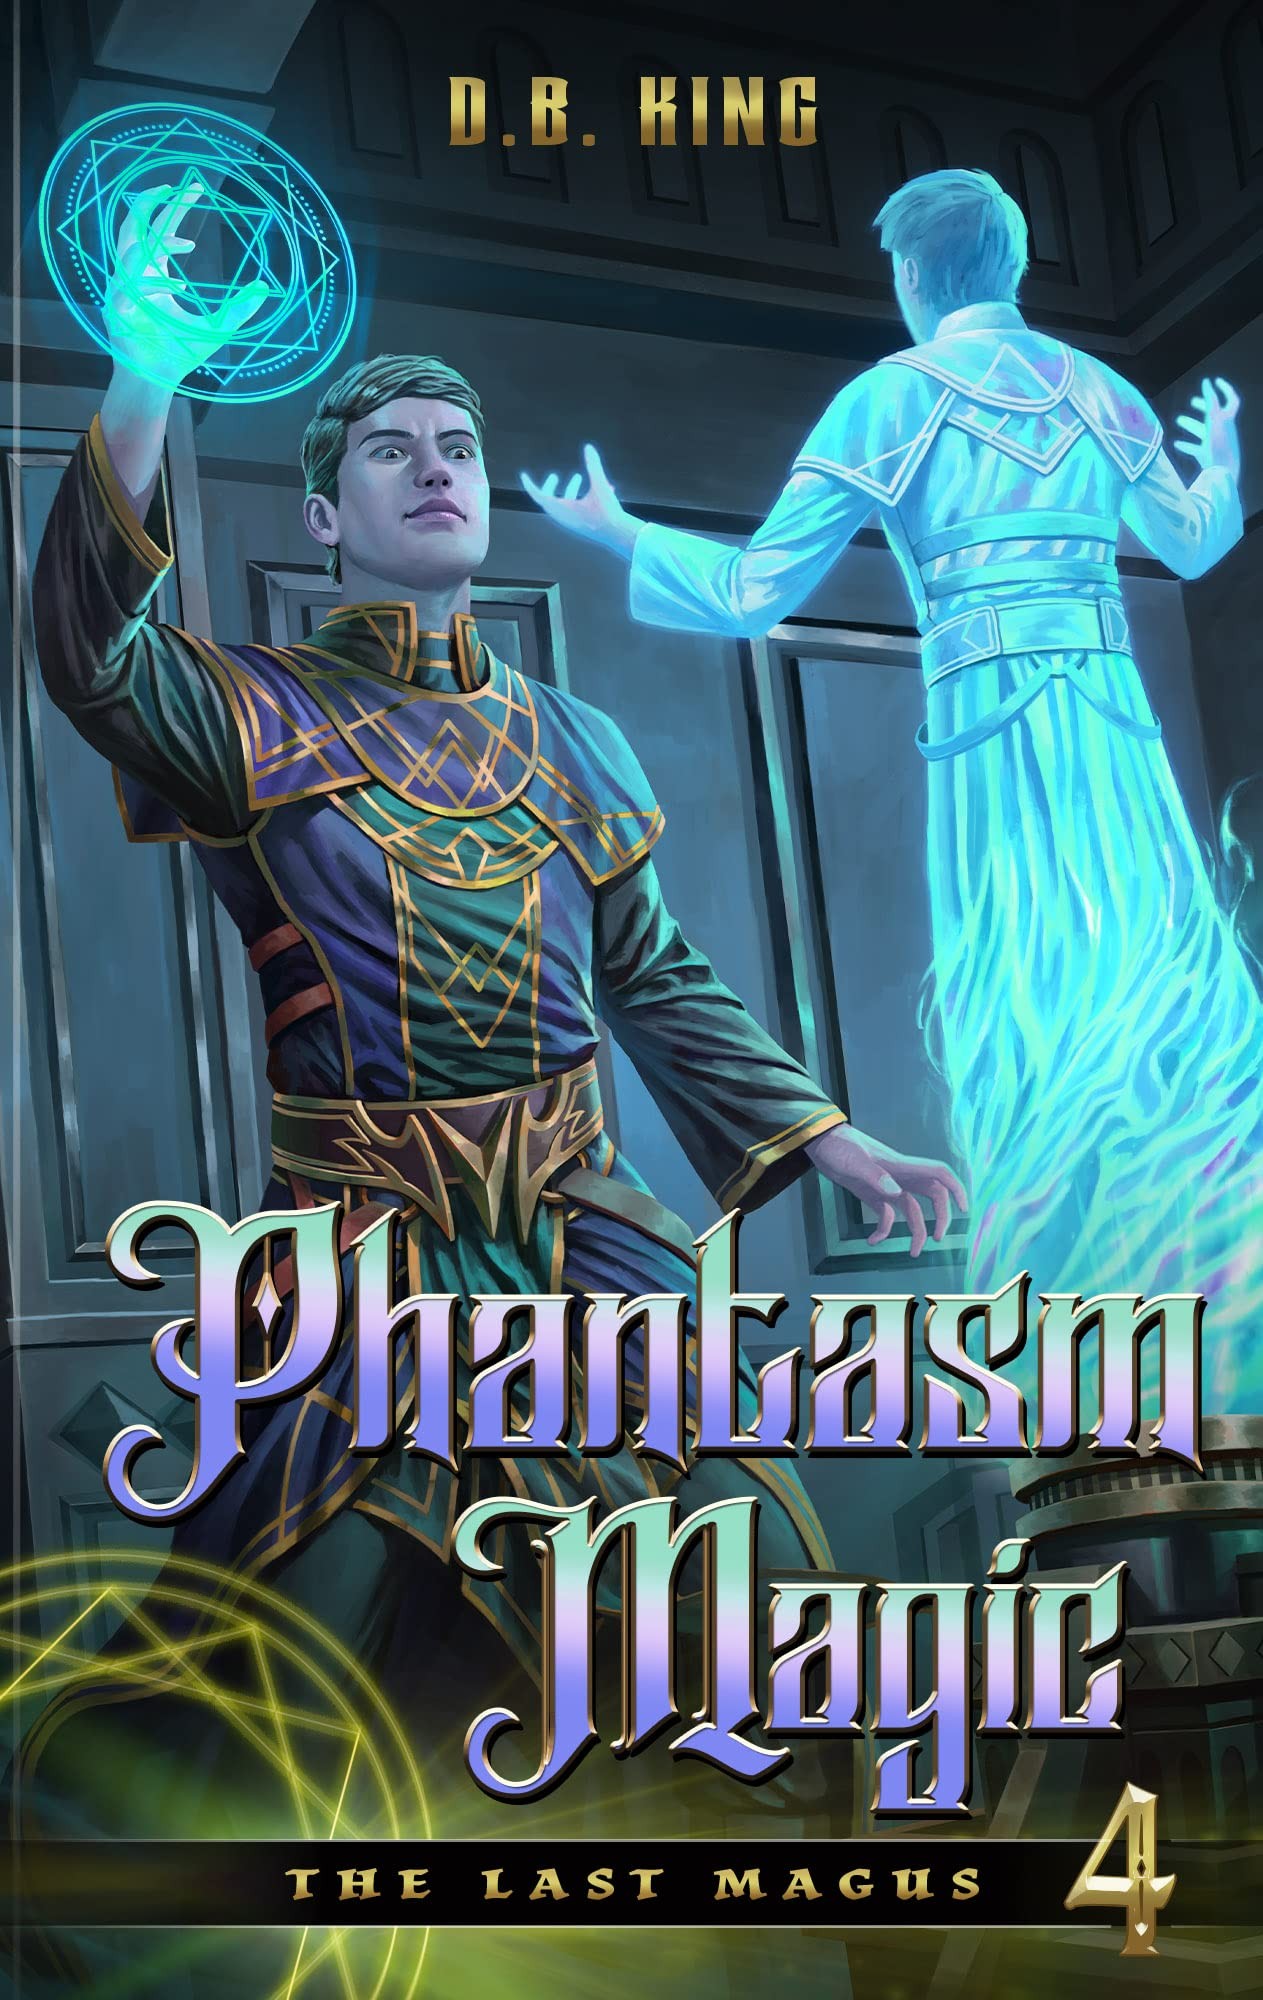 Phantasm Magic